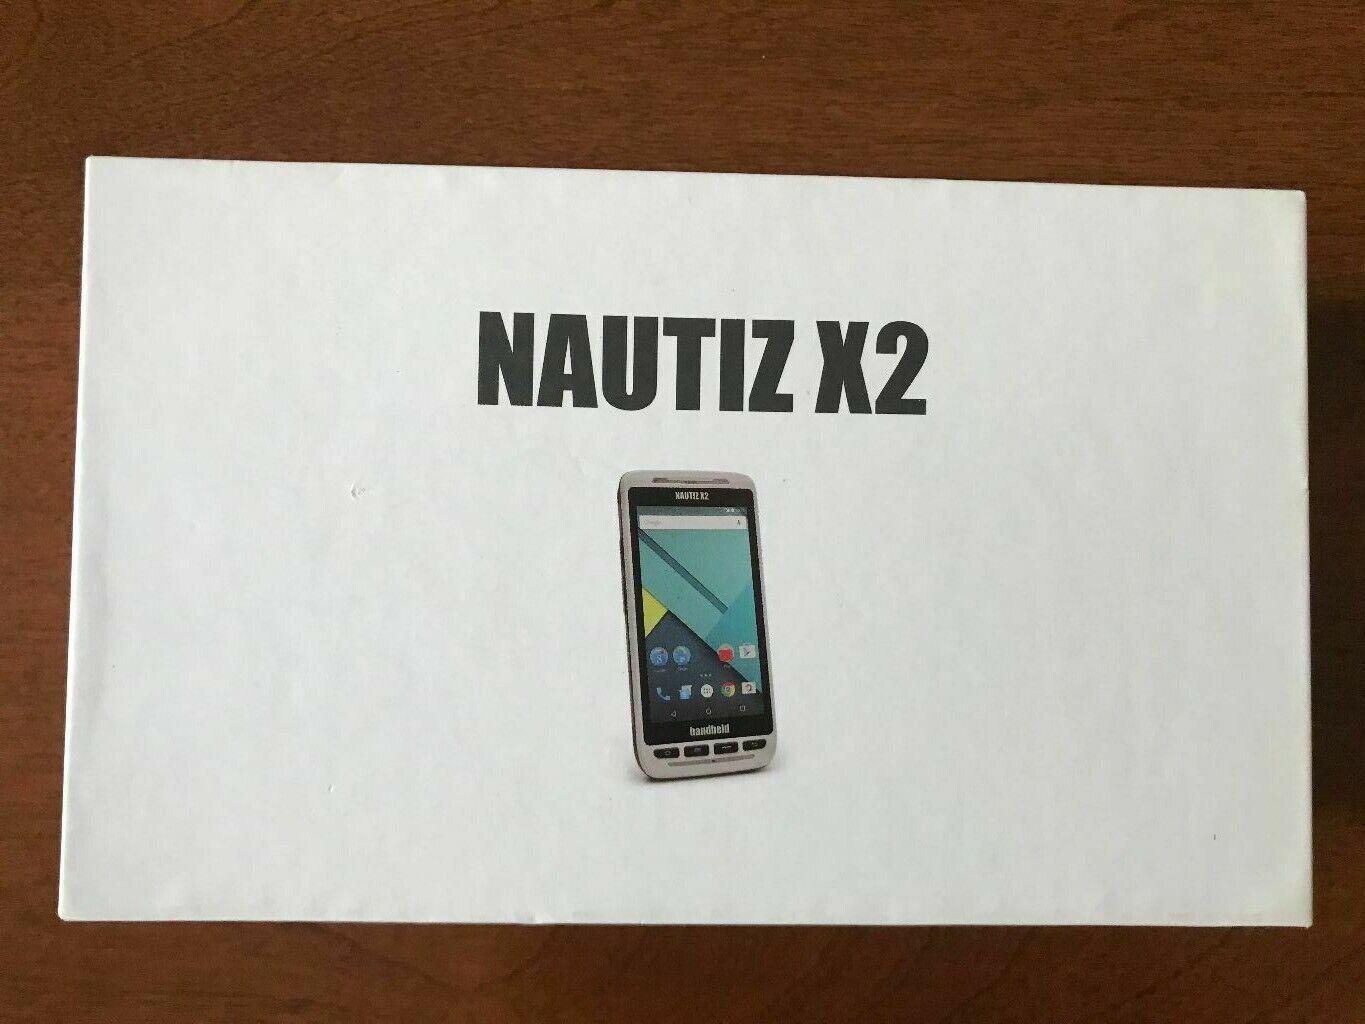 NEW Max 72% OFF HANDHELD NAUTIZ X2 Handheld Computer Nippon regular agency Rugged